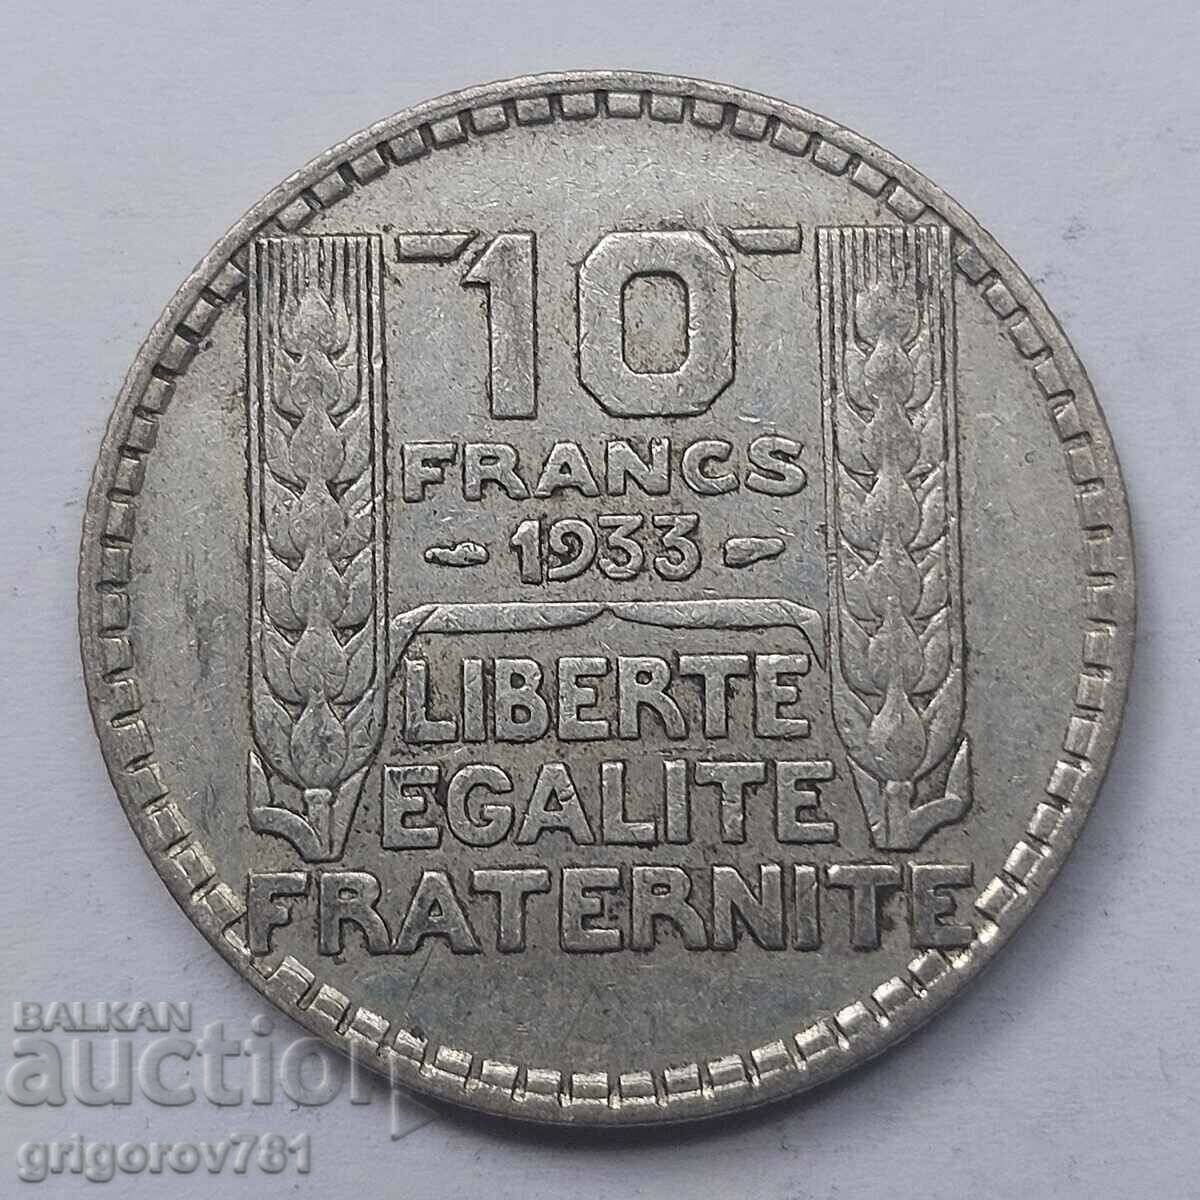 10 Franci Argint Franta 1933 - Moneda de argint #30